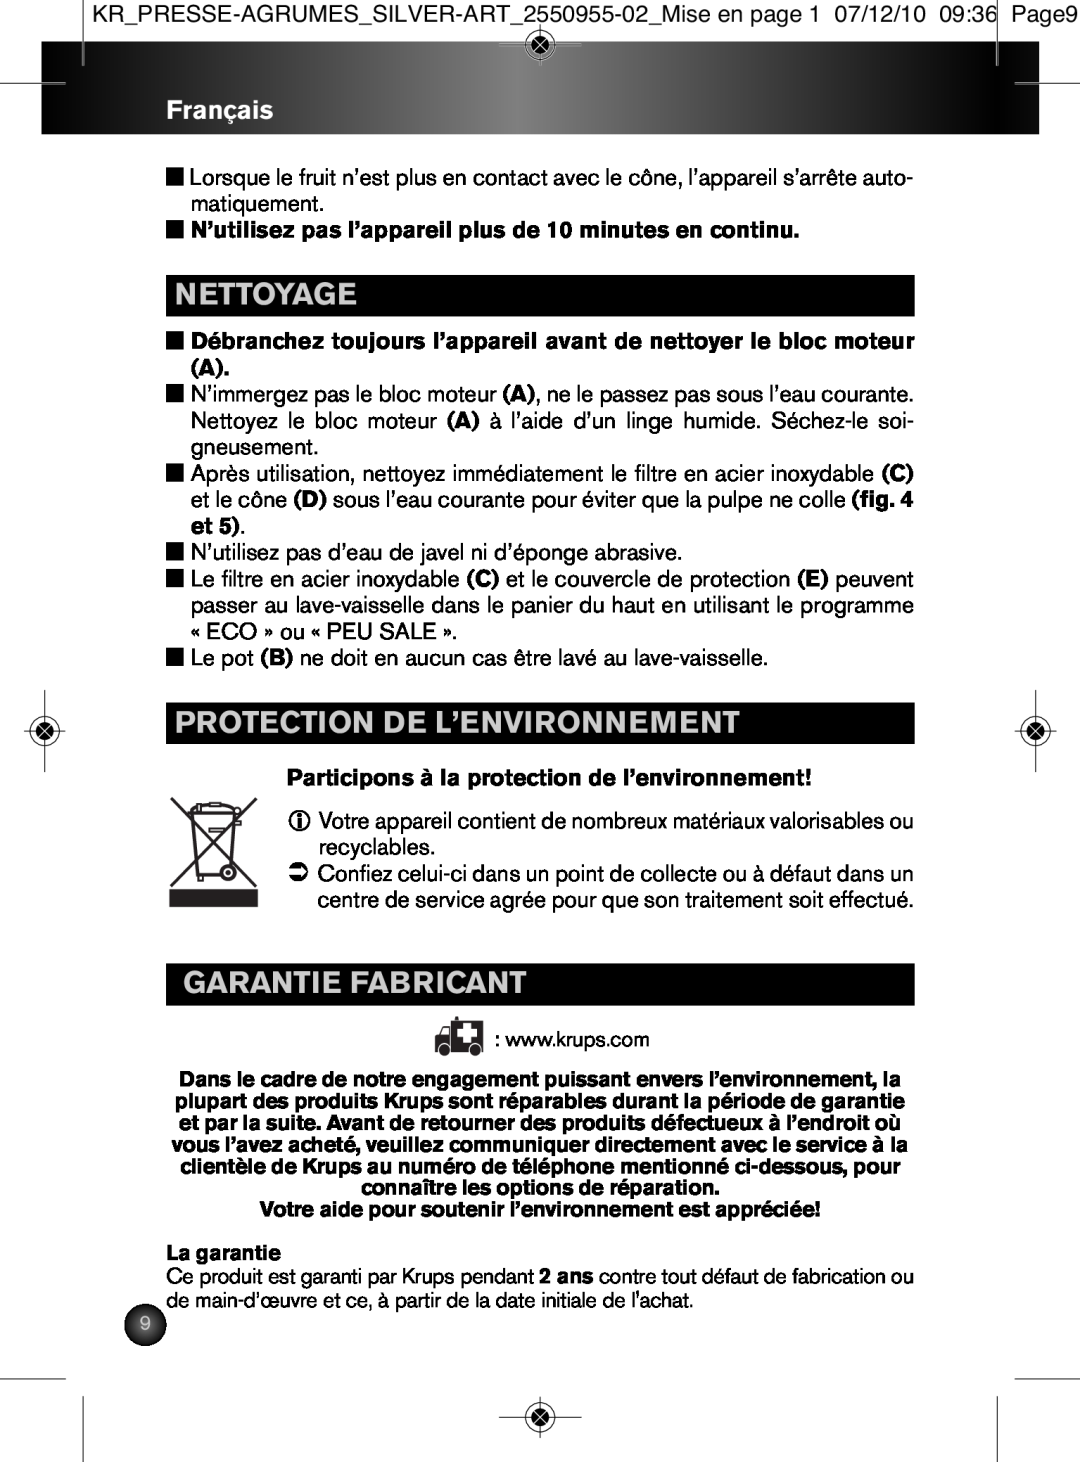 Krups 2550955-02 manual Nettoyage, Protection De L’Environnement, Garantie Fabricant, Français 